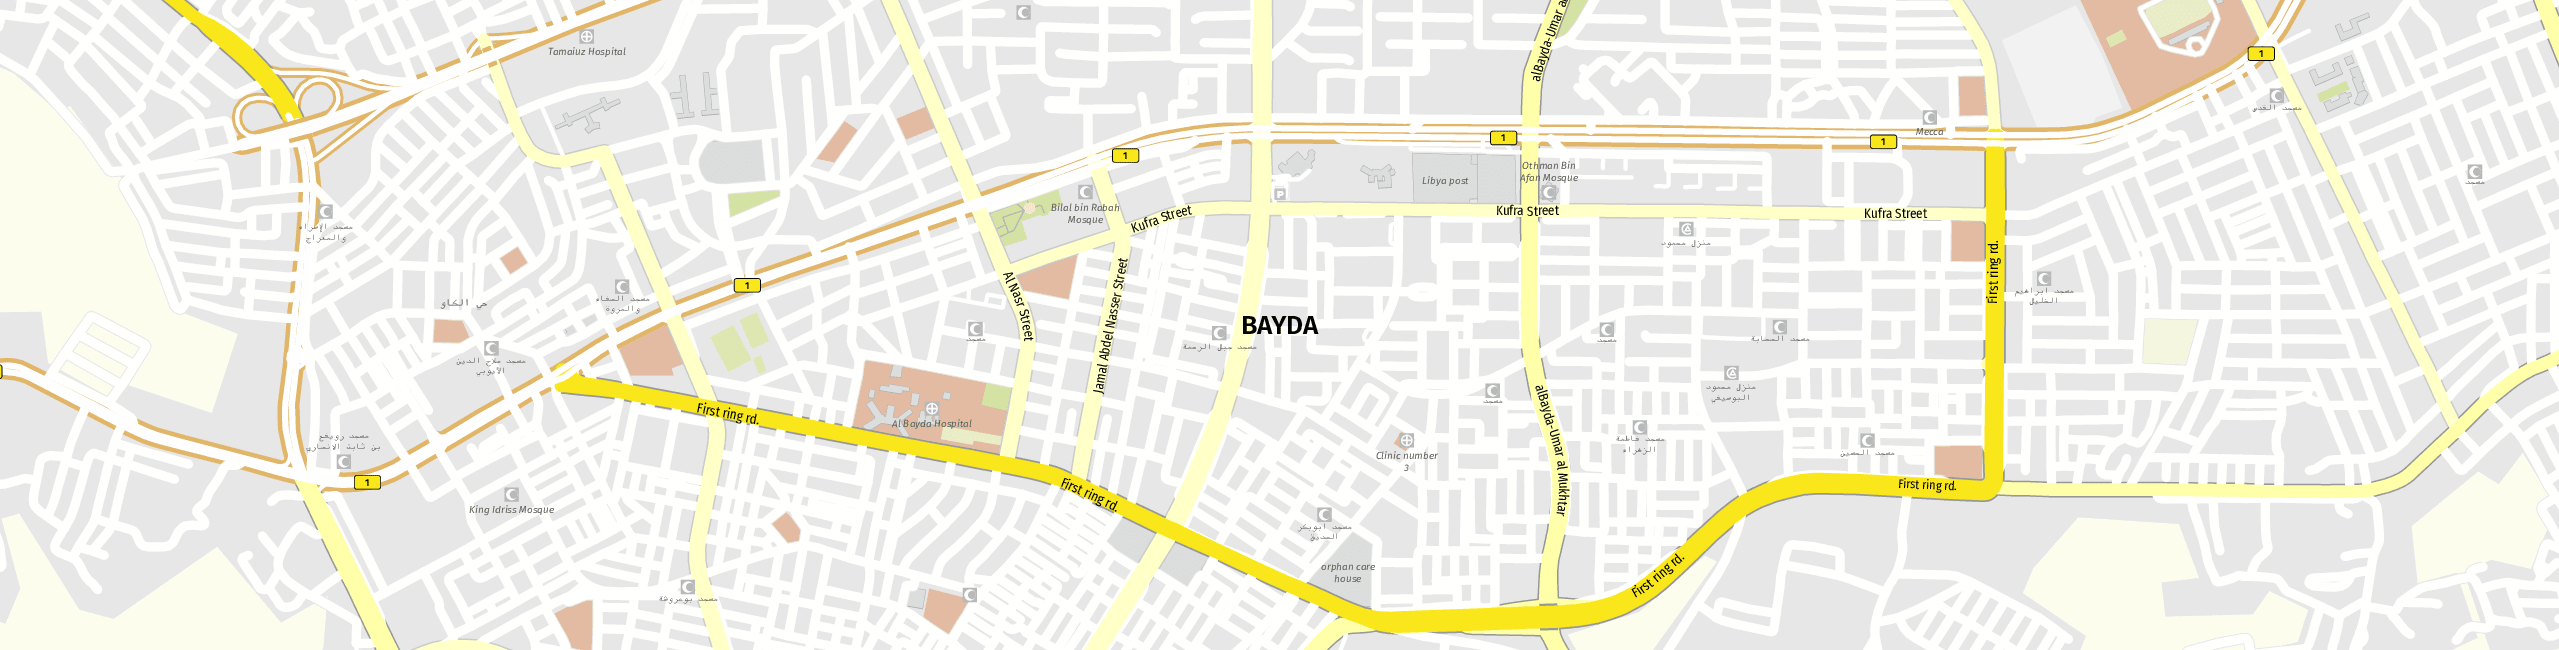 Stadtplan al-Baida zum Downloaden.